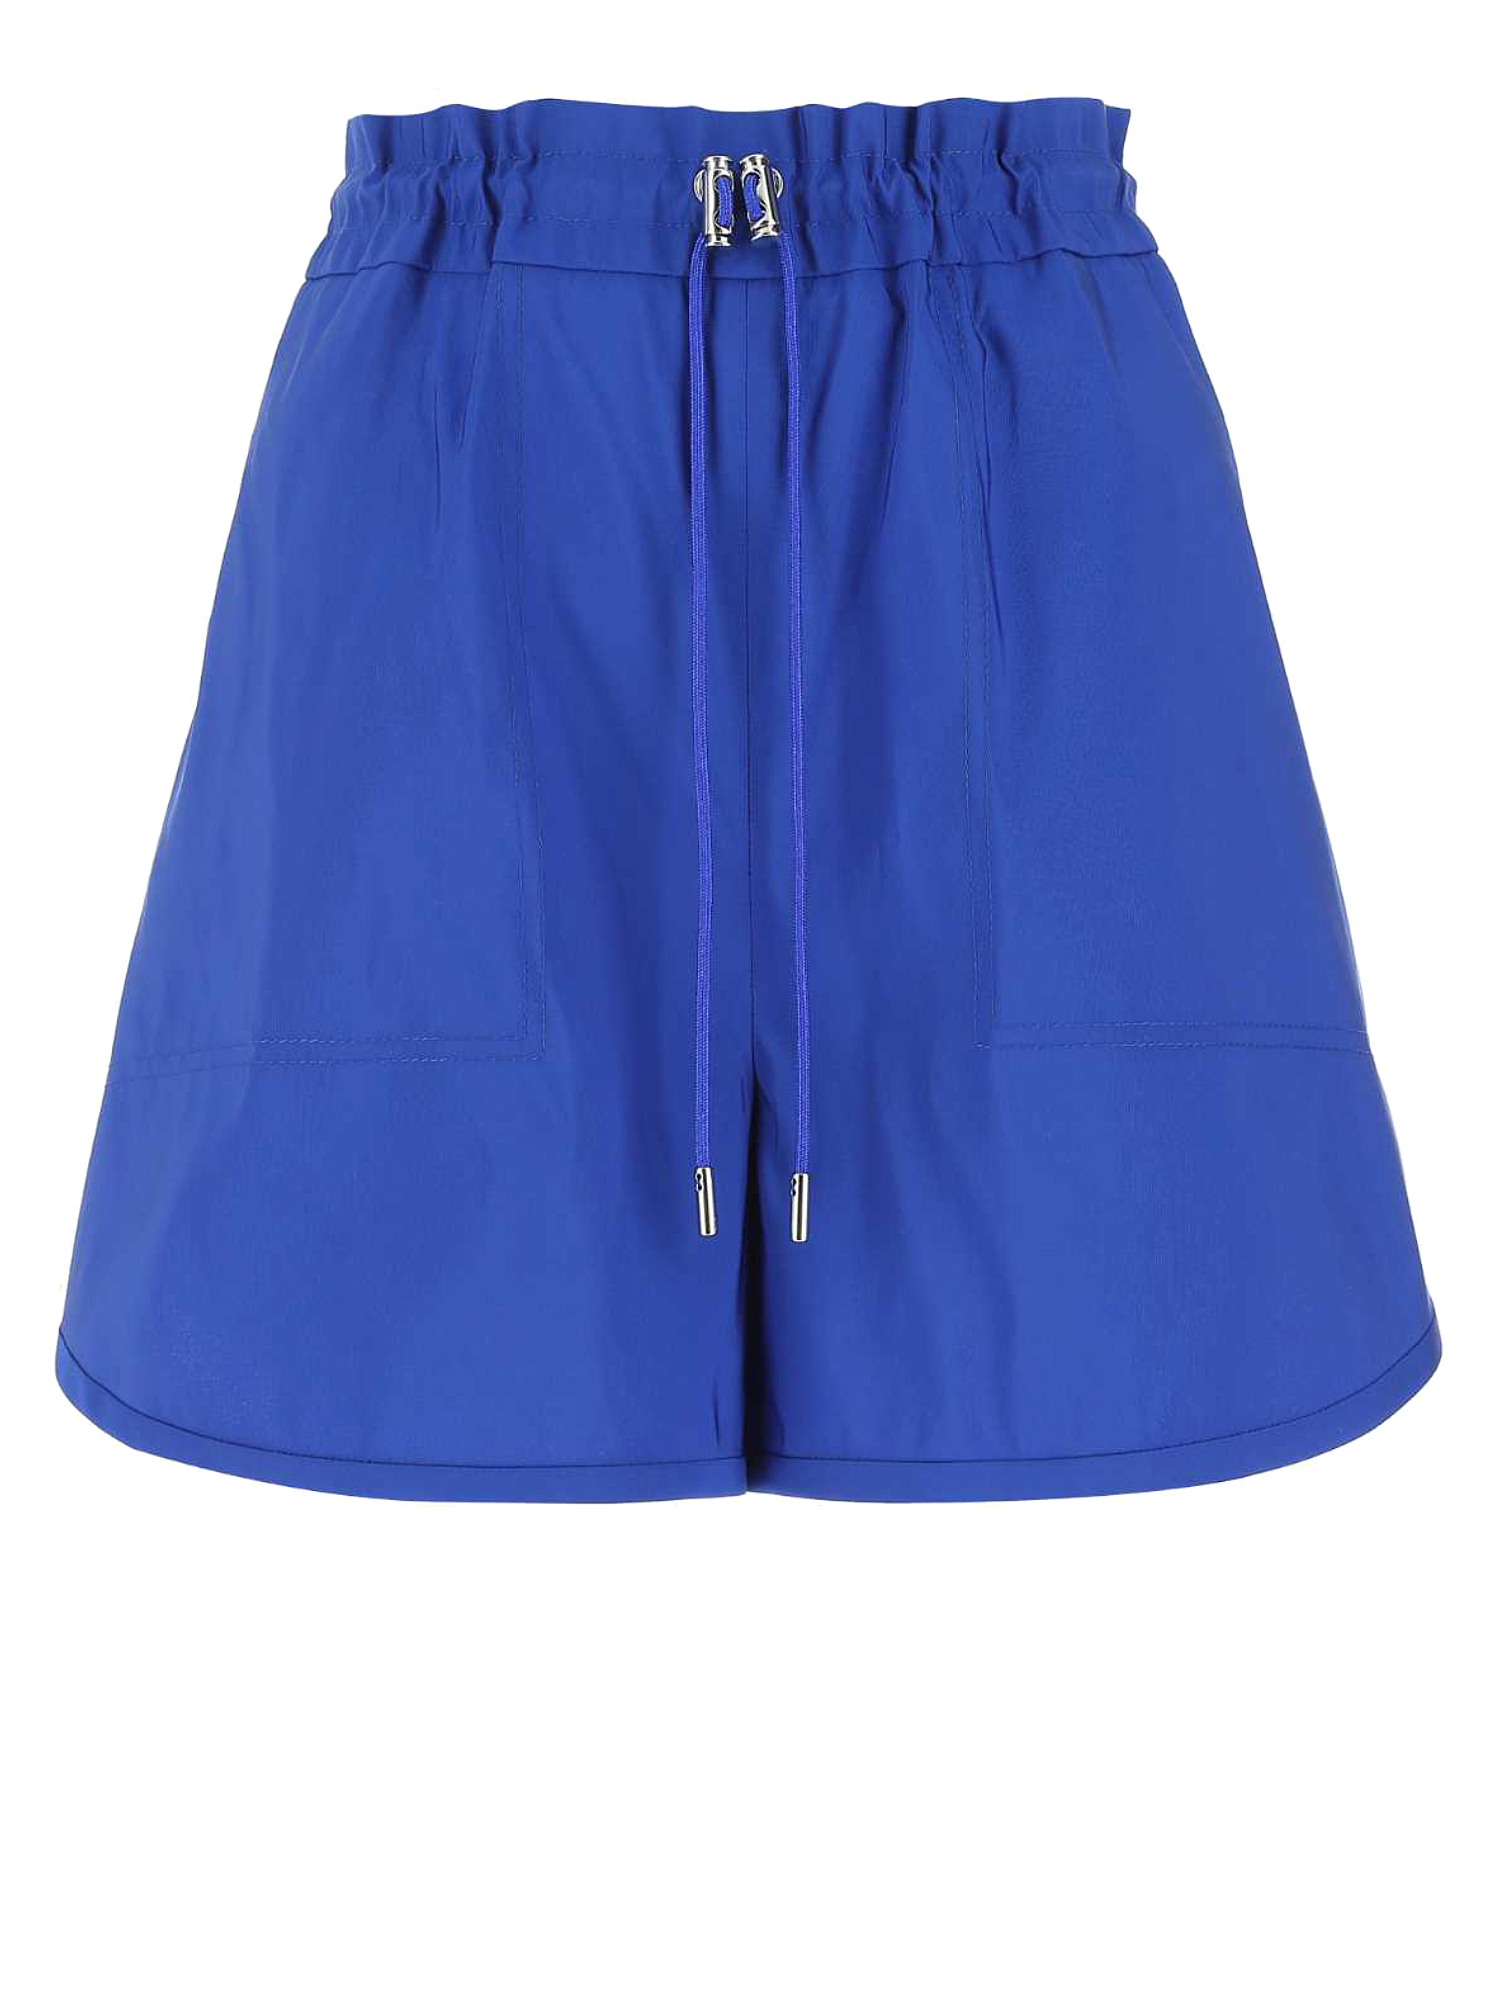 Pantalons Pour Femme - Alexander Mcqueen - En Synthetic Fibers Blue - Taille:  -